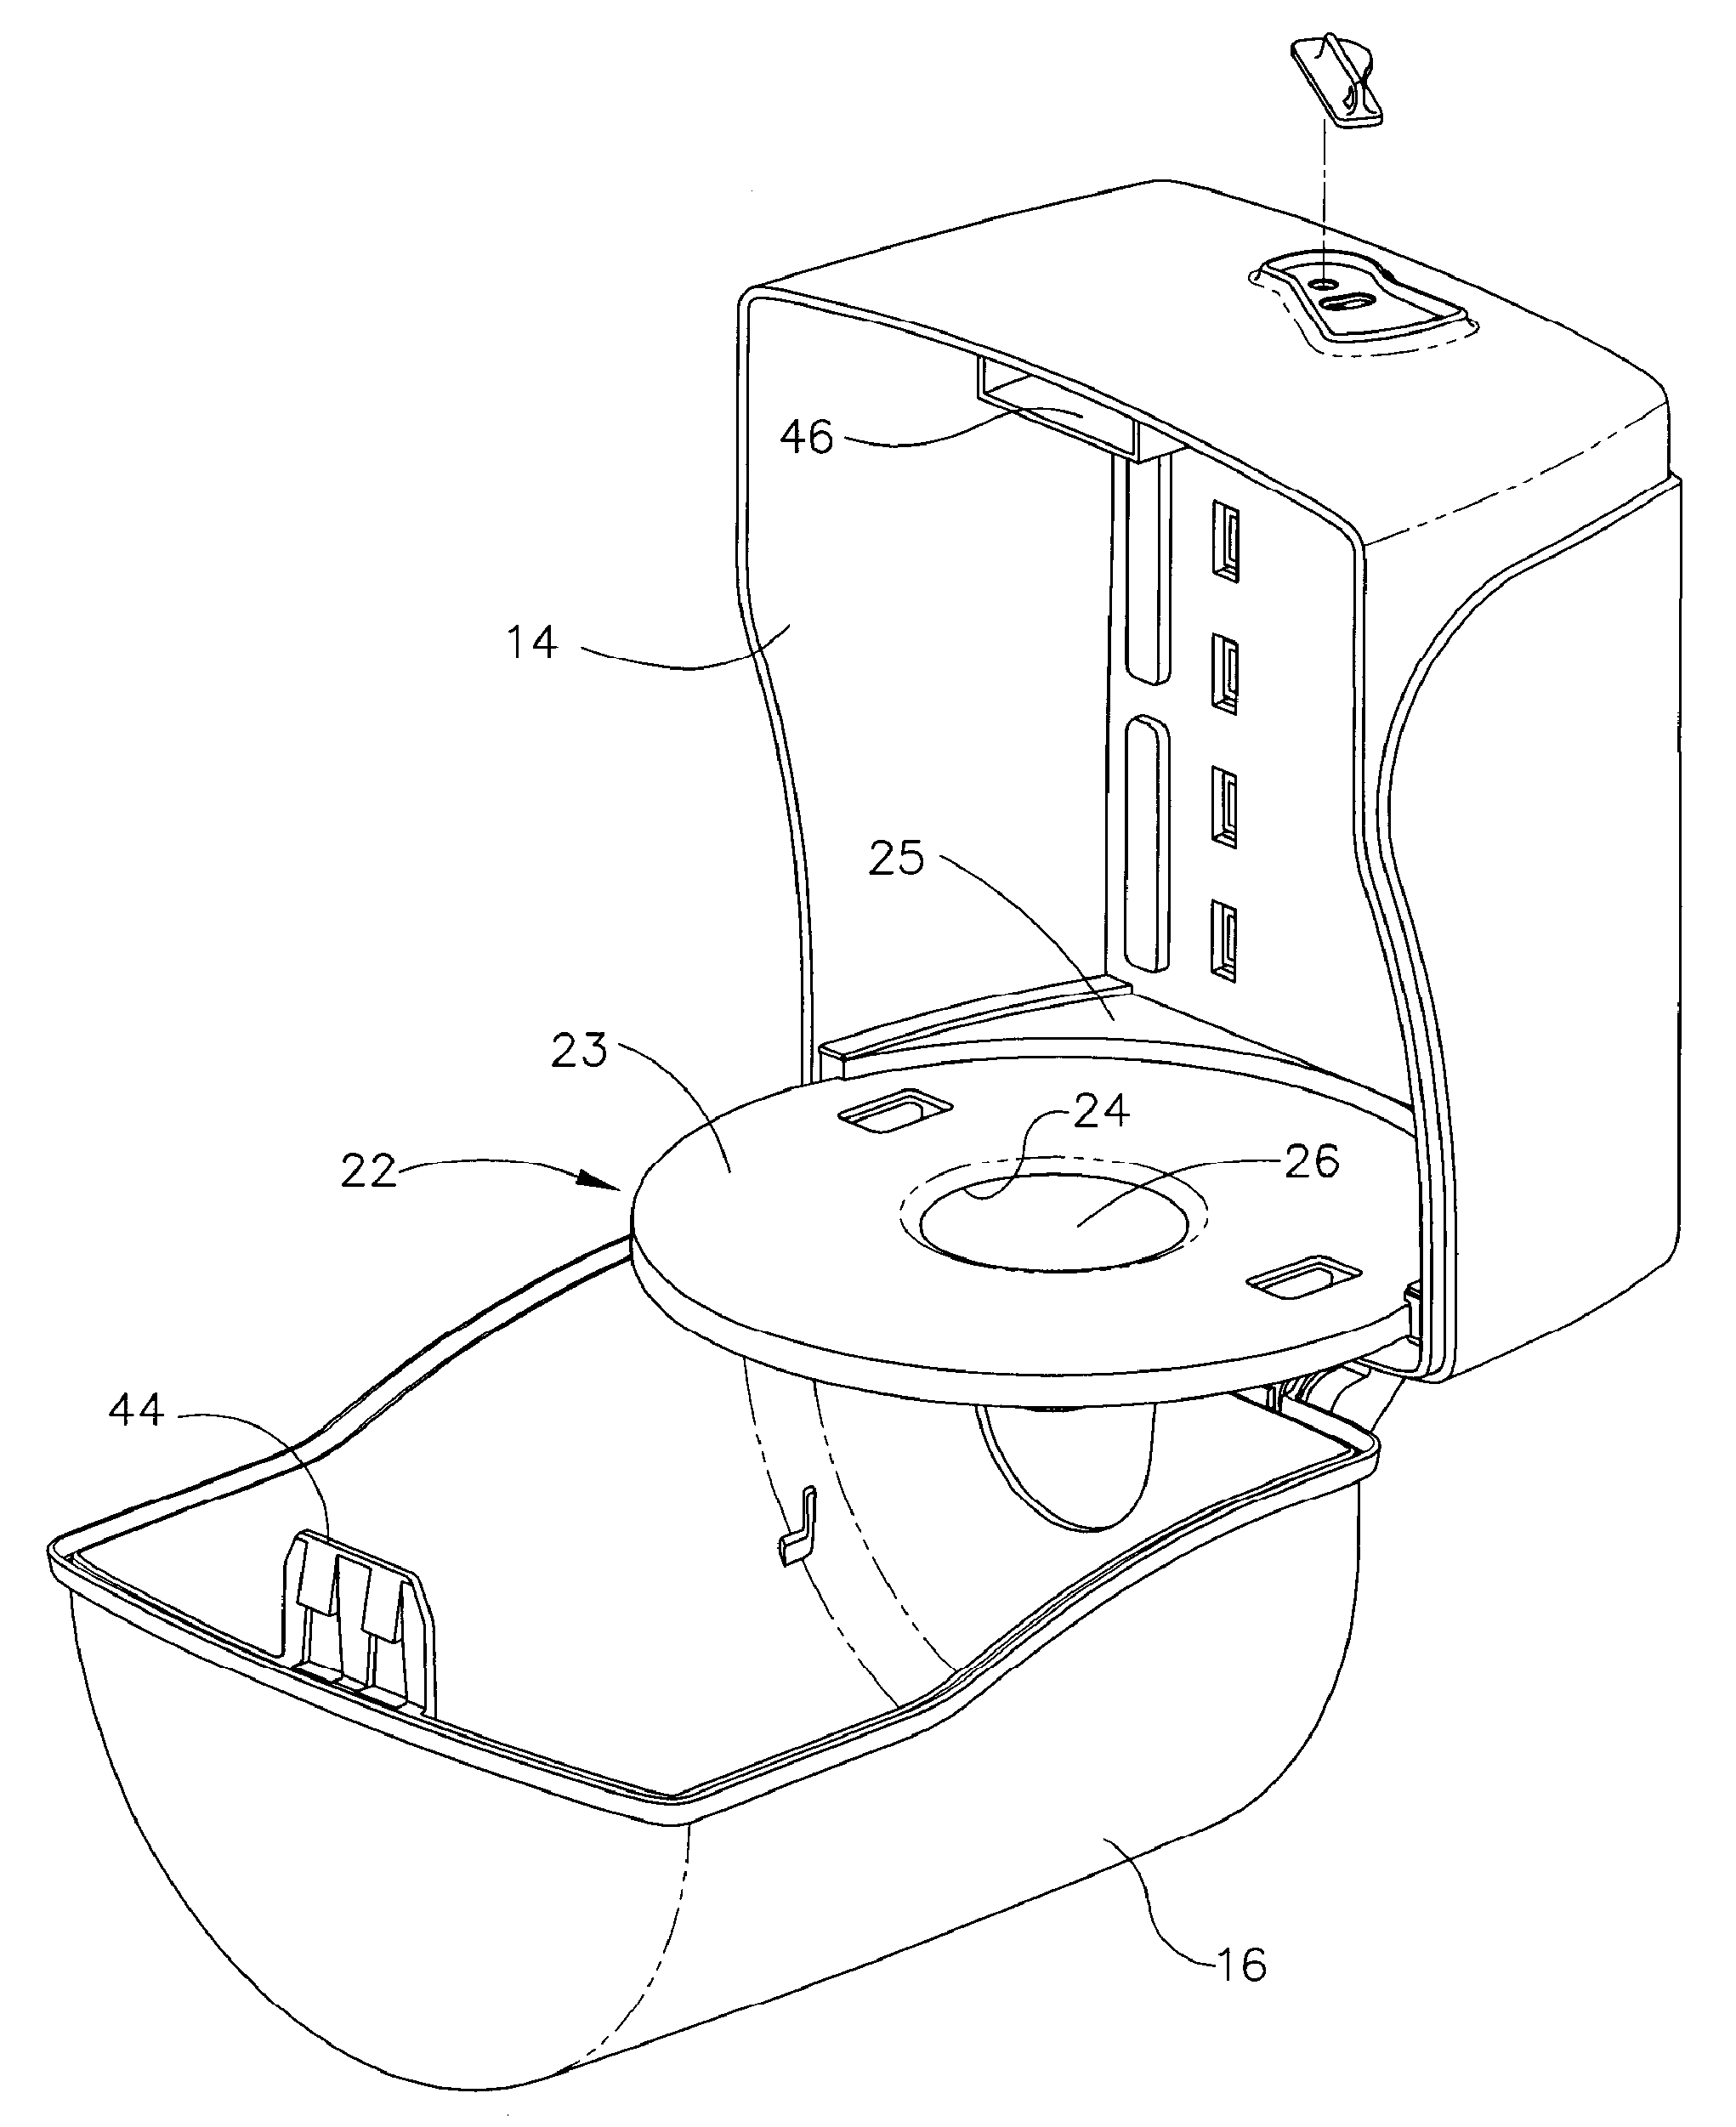 Center-pull paper towel dispenser